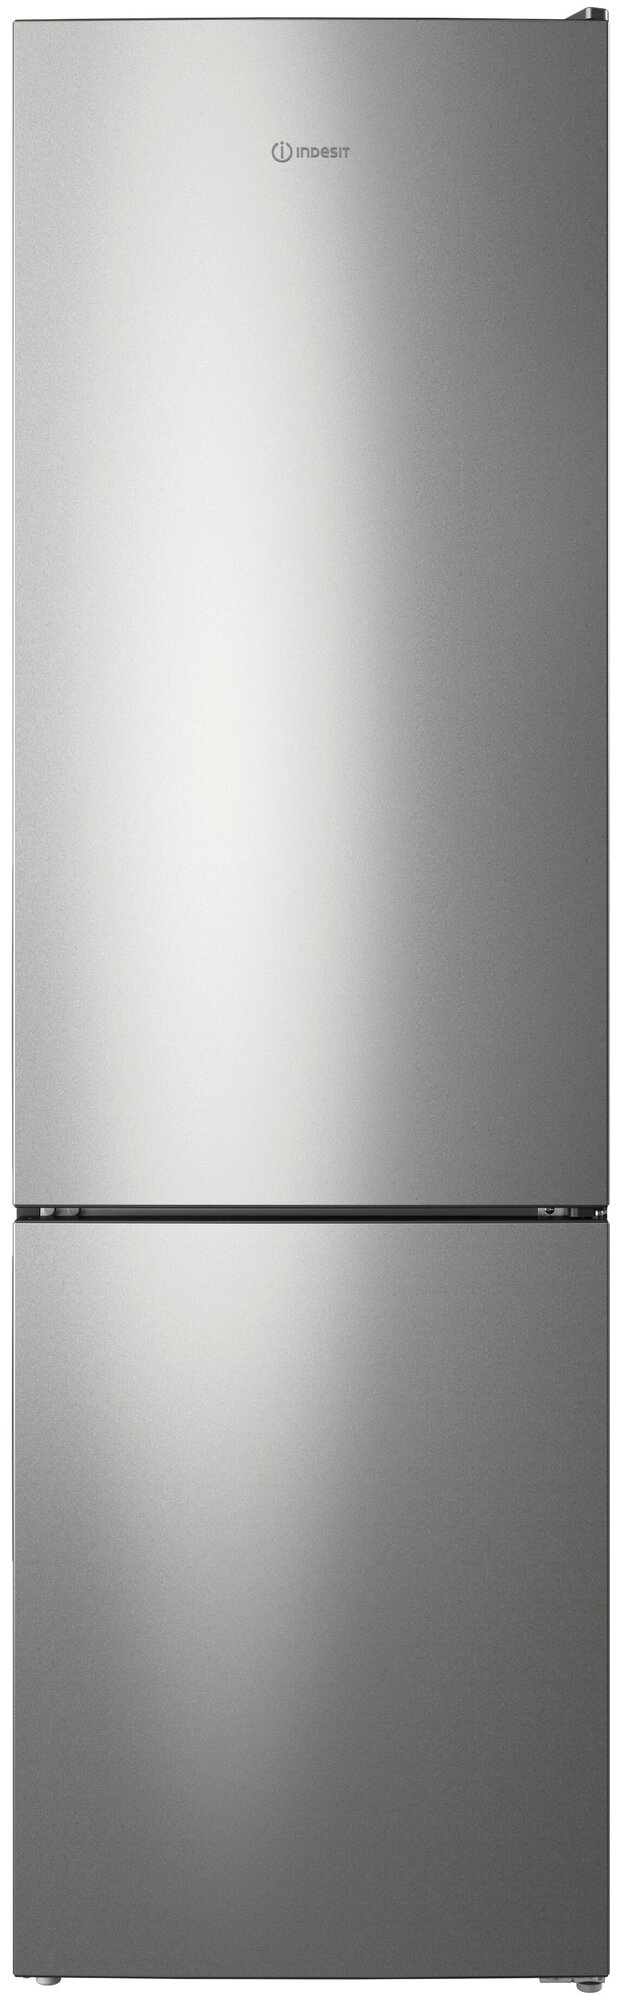 Холодильник Indesit ITR 4200